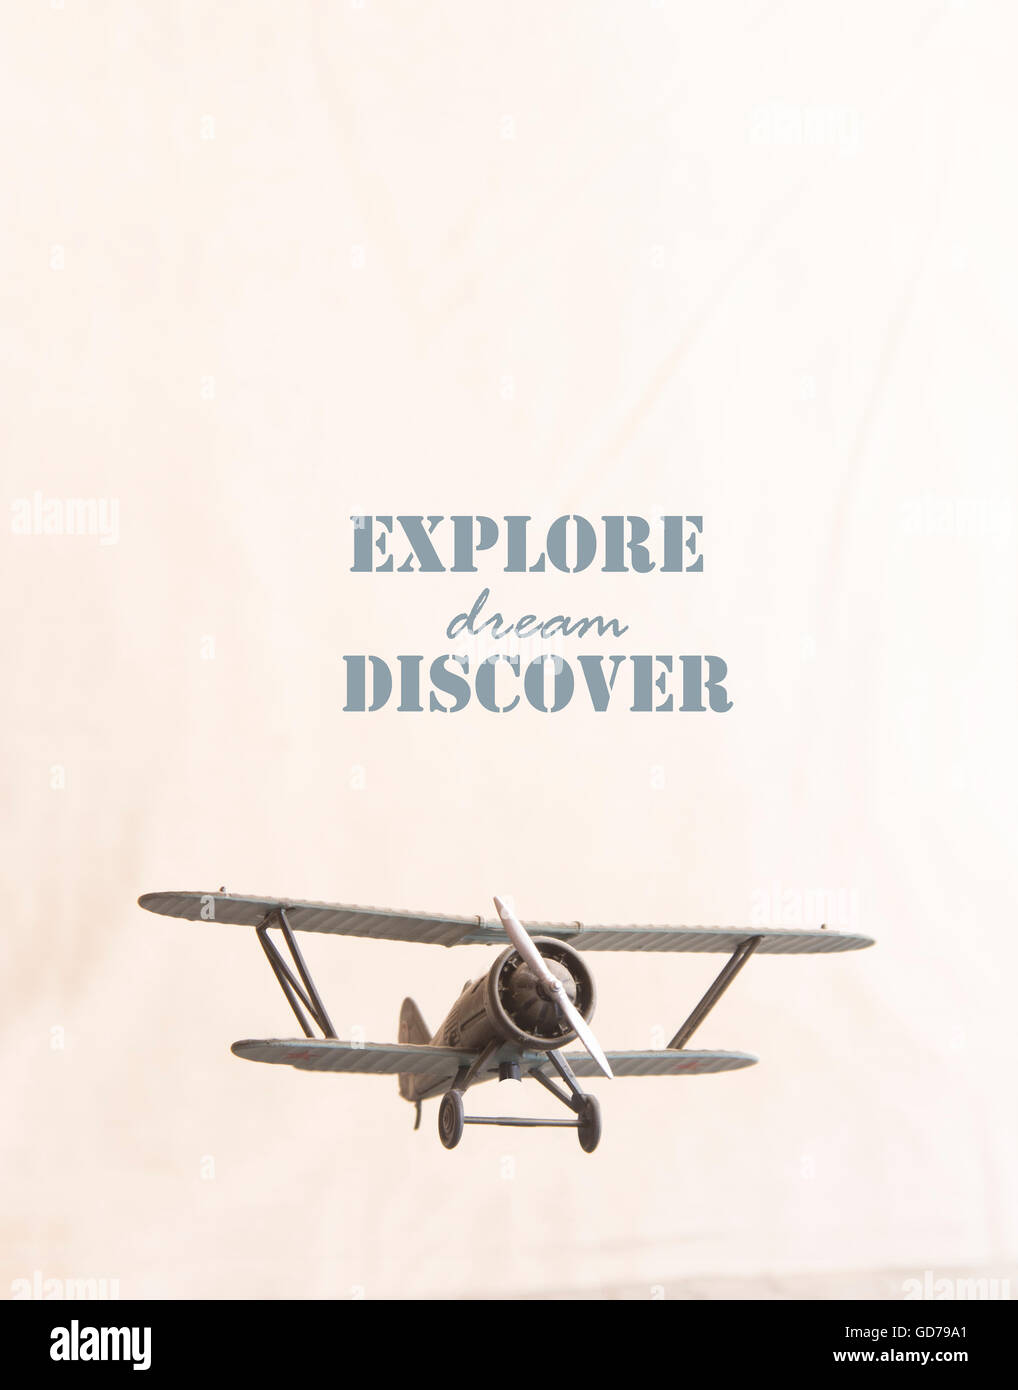 Explorer, découvrir, rêve, idée retro style Banque D'Images